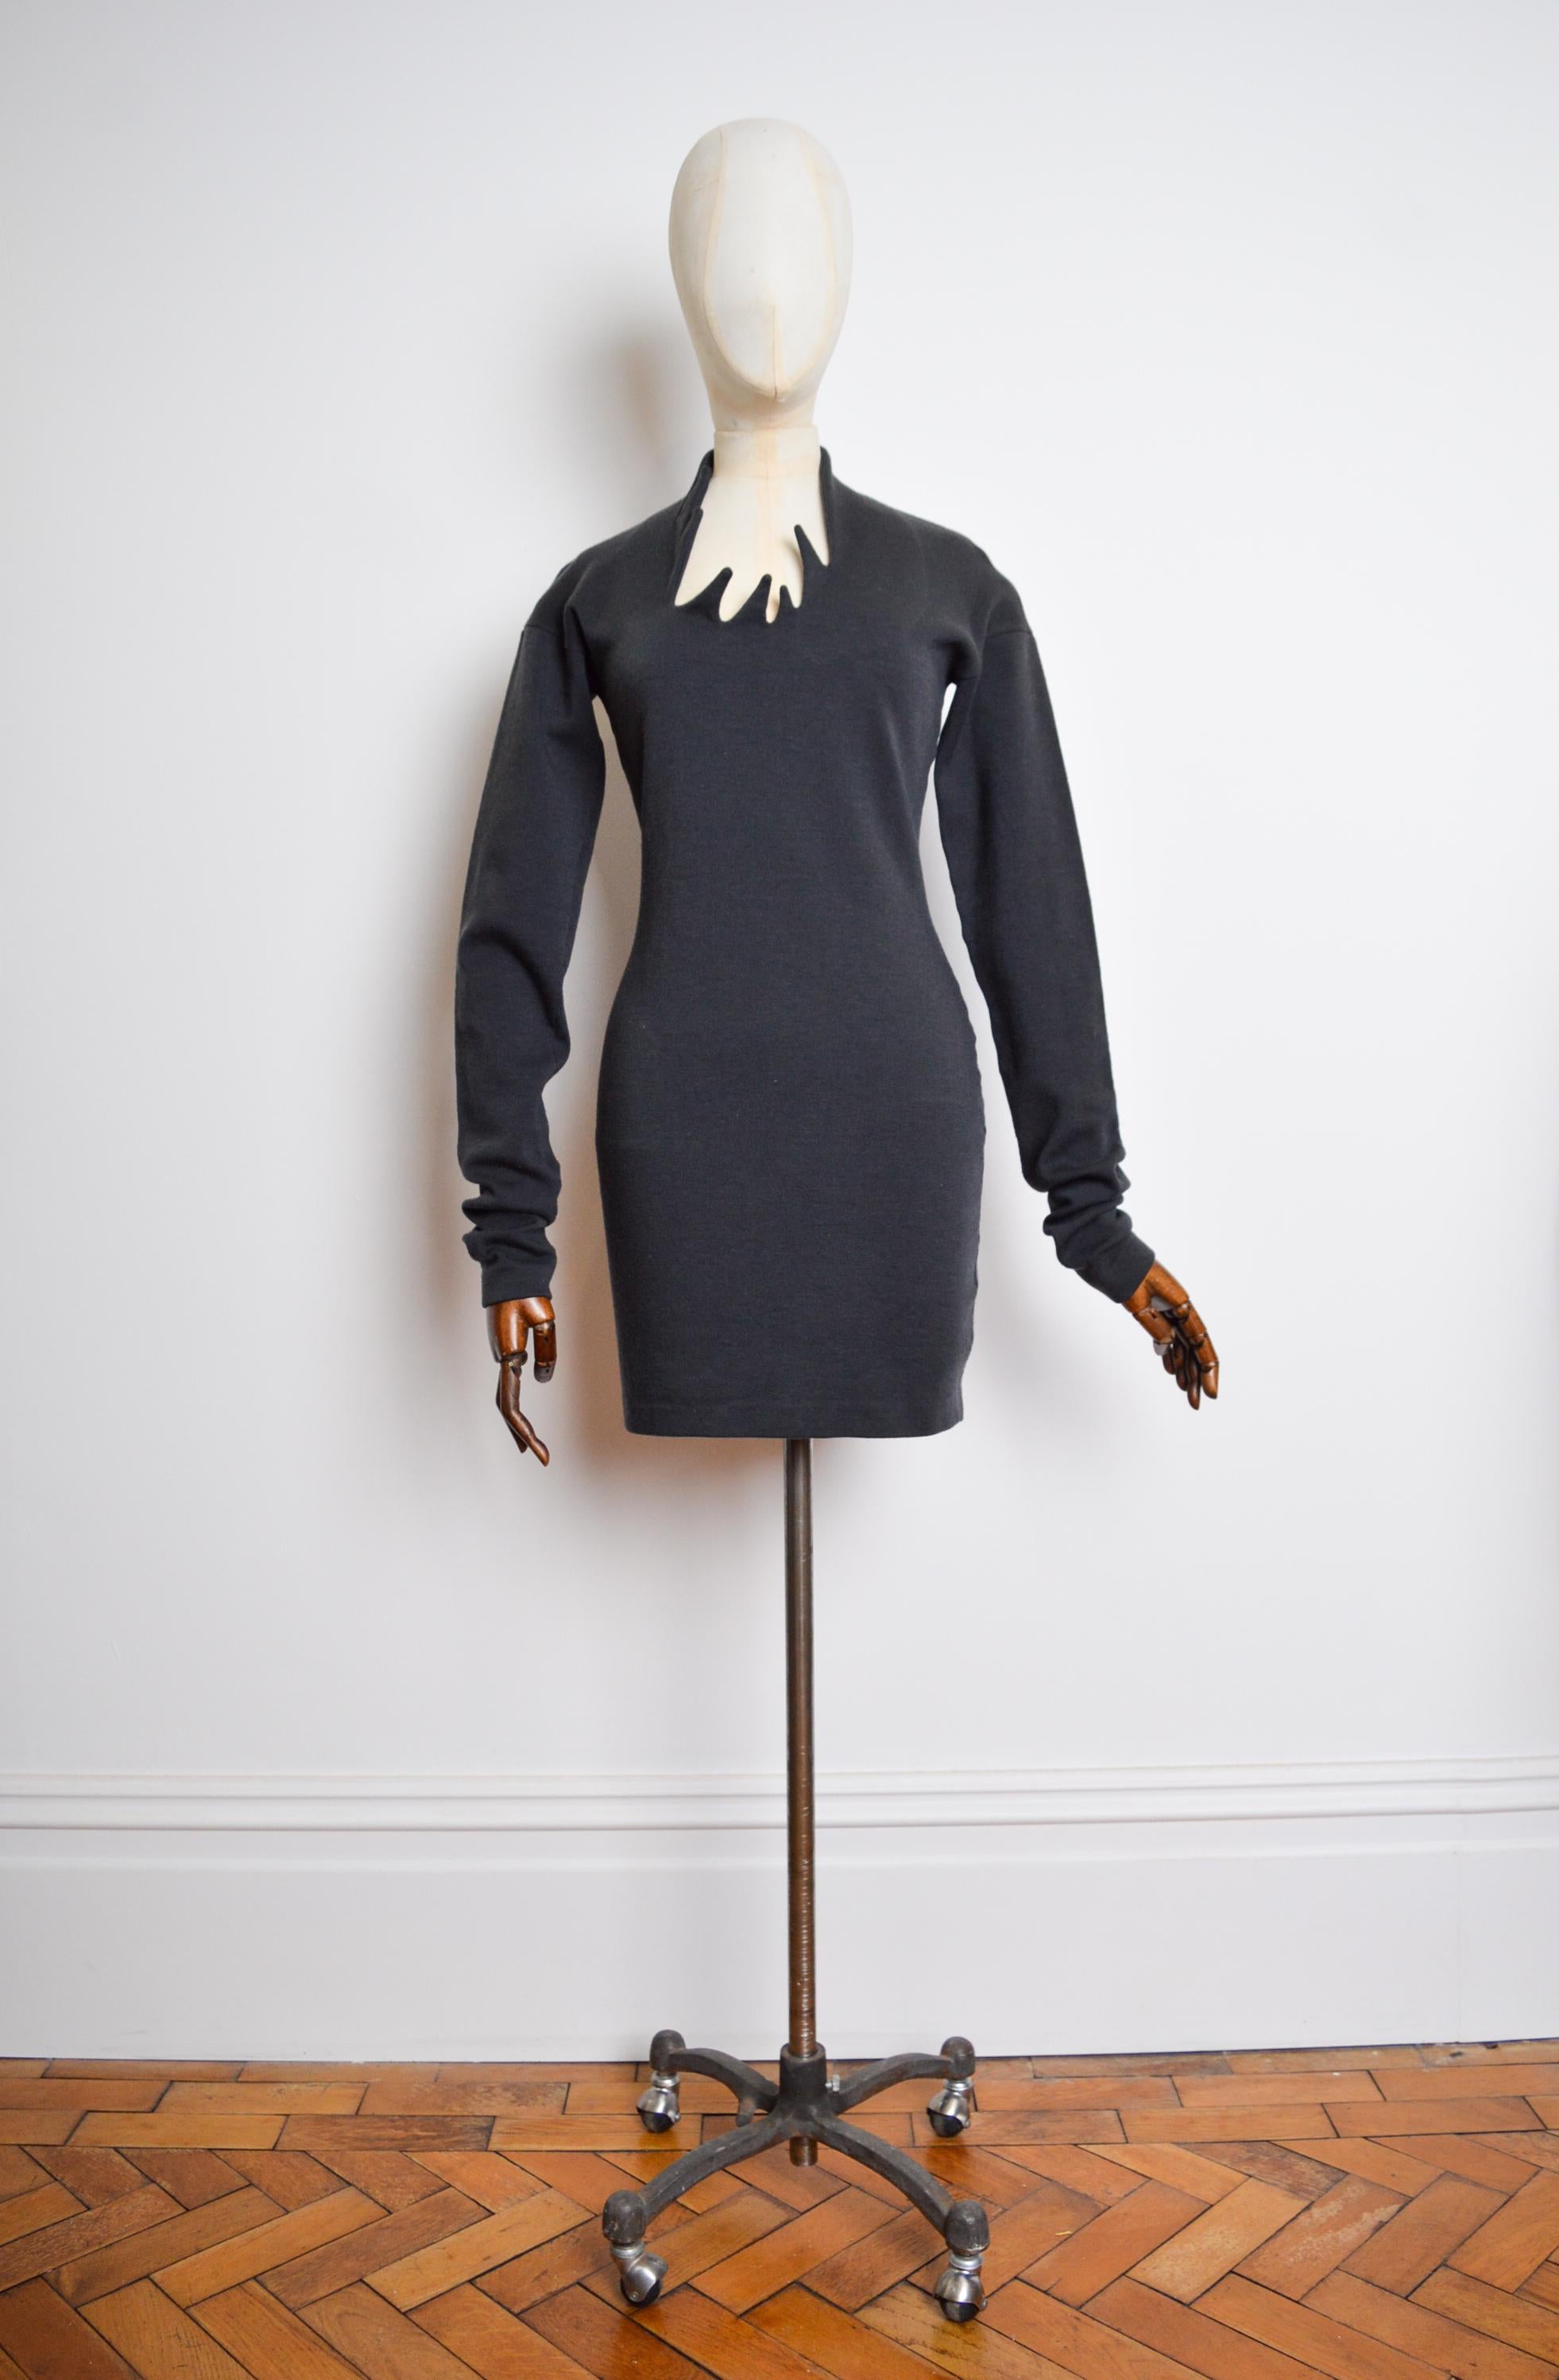 Avant Guard 1990, ROMEO GIGLI a réalisé une robe moulante en laine épaisse et extensible.

FABRIQUÉ EN ITALIE !

94% laine
6% Spandex

Les mesures sont en pouces -

D'une fosse à l'autre - 17,5 pouces
De l'épaule à l'ourlet - 35 pouces
De la fourche